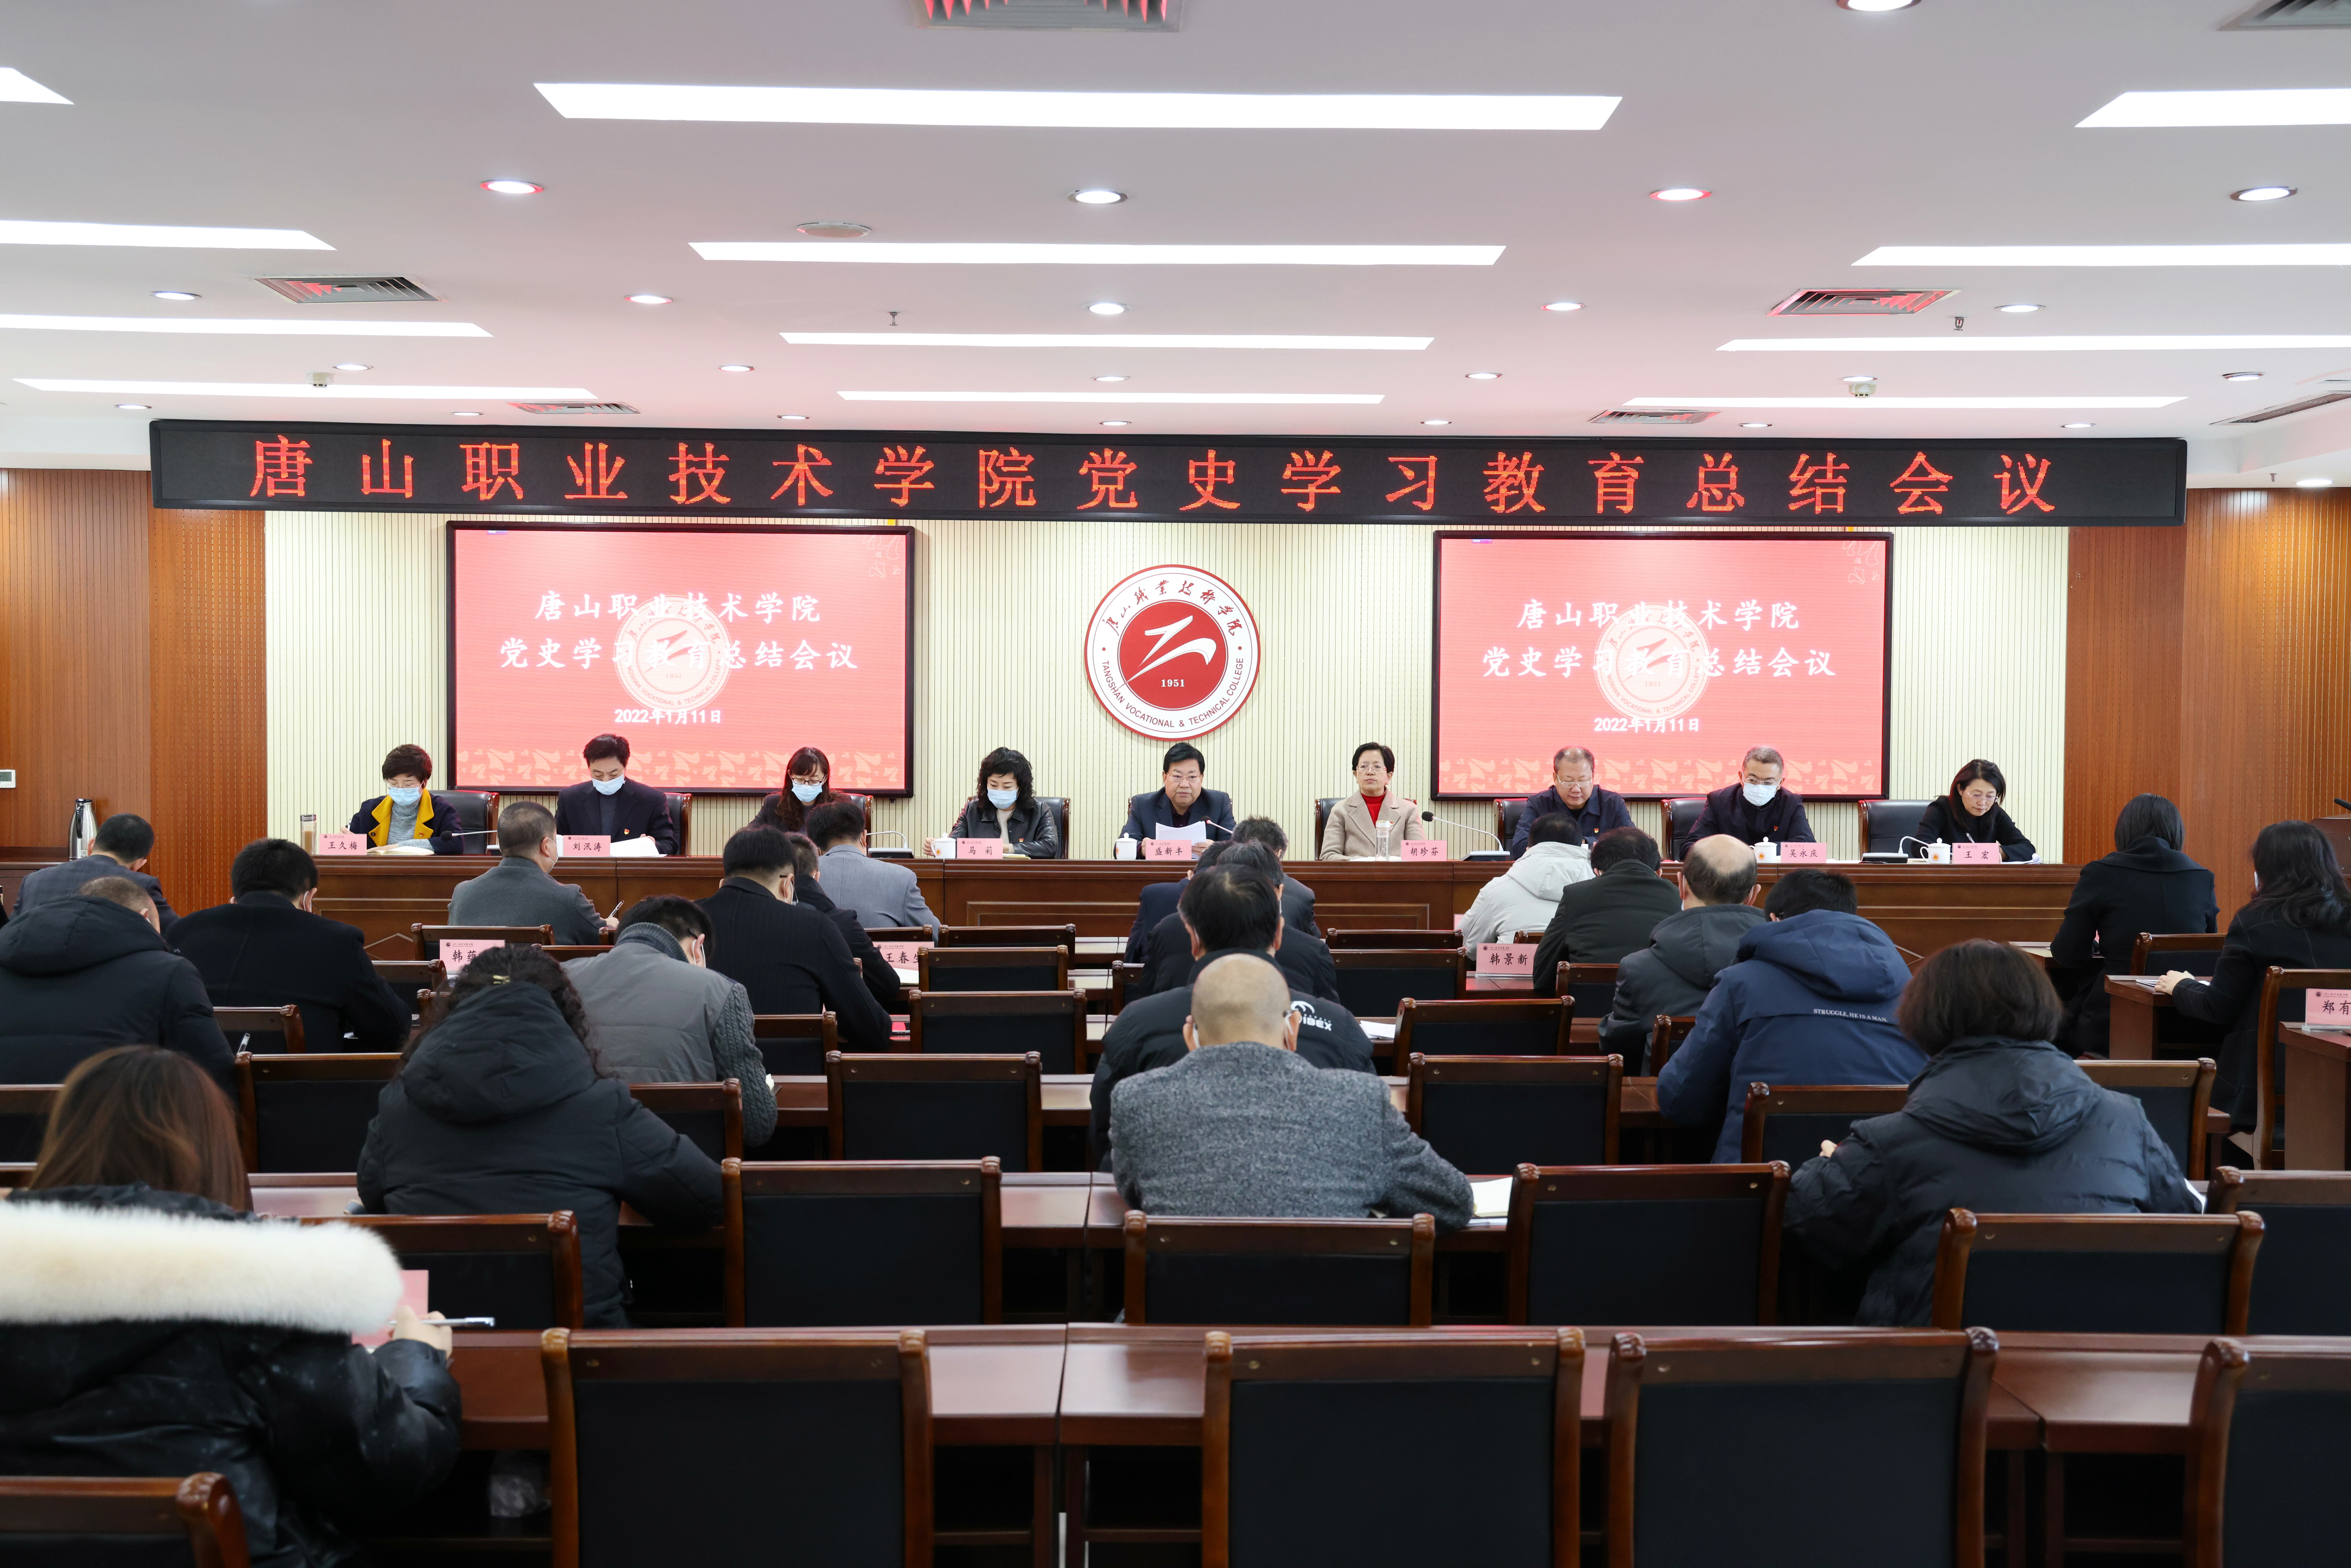     唐山职院召开党史学习教育总结会议